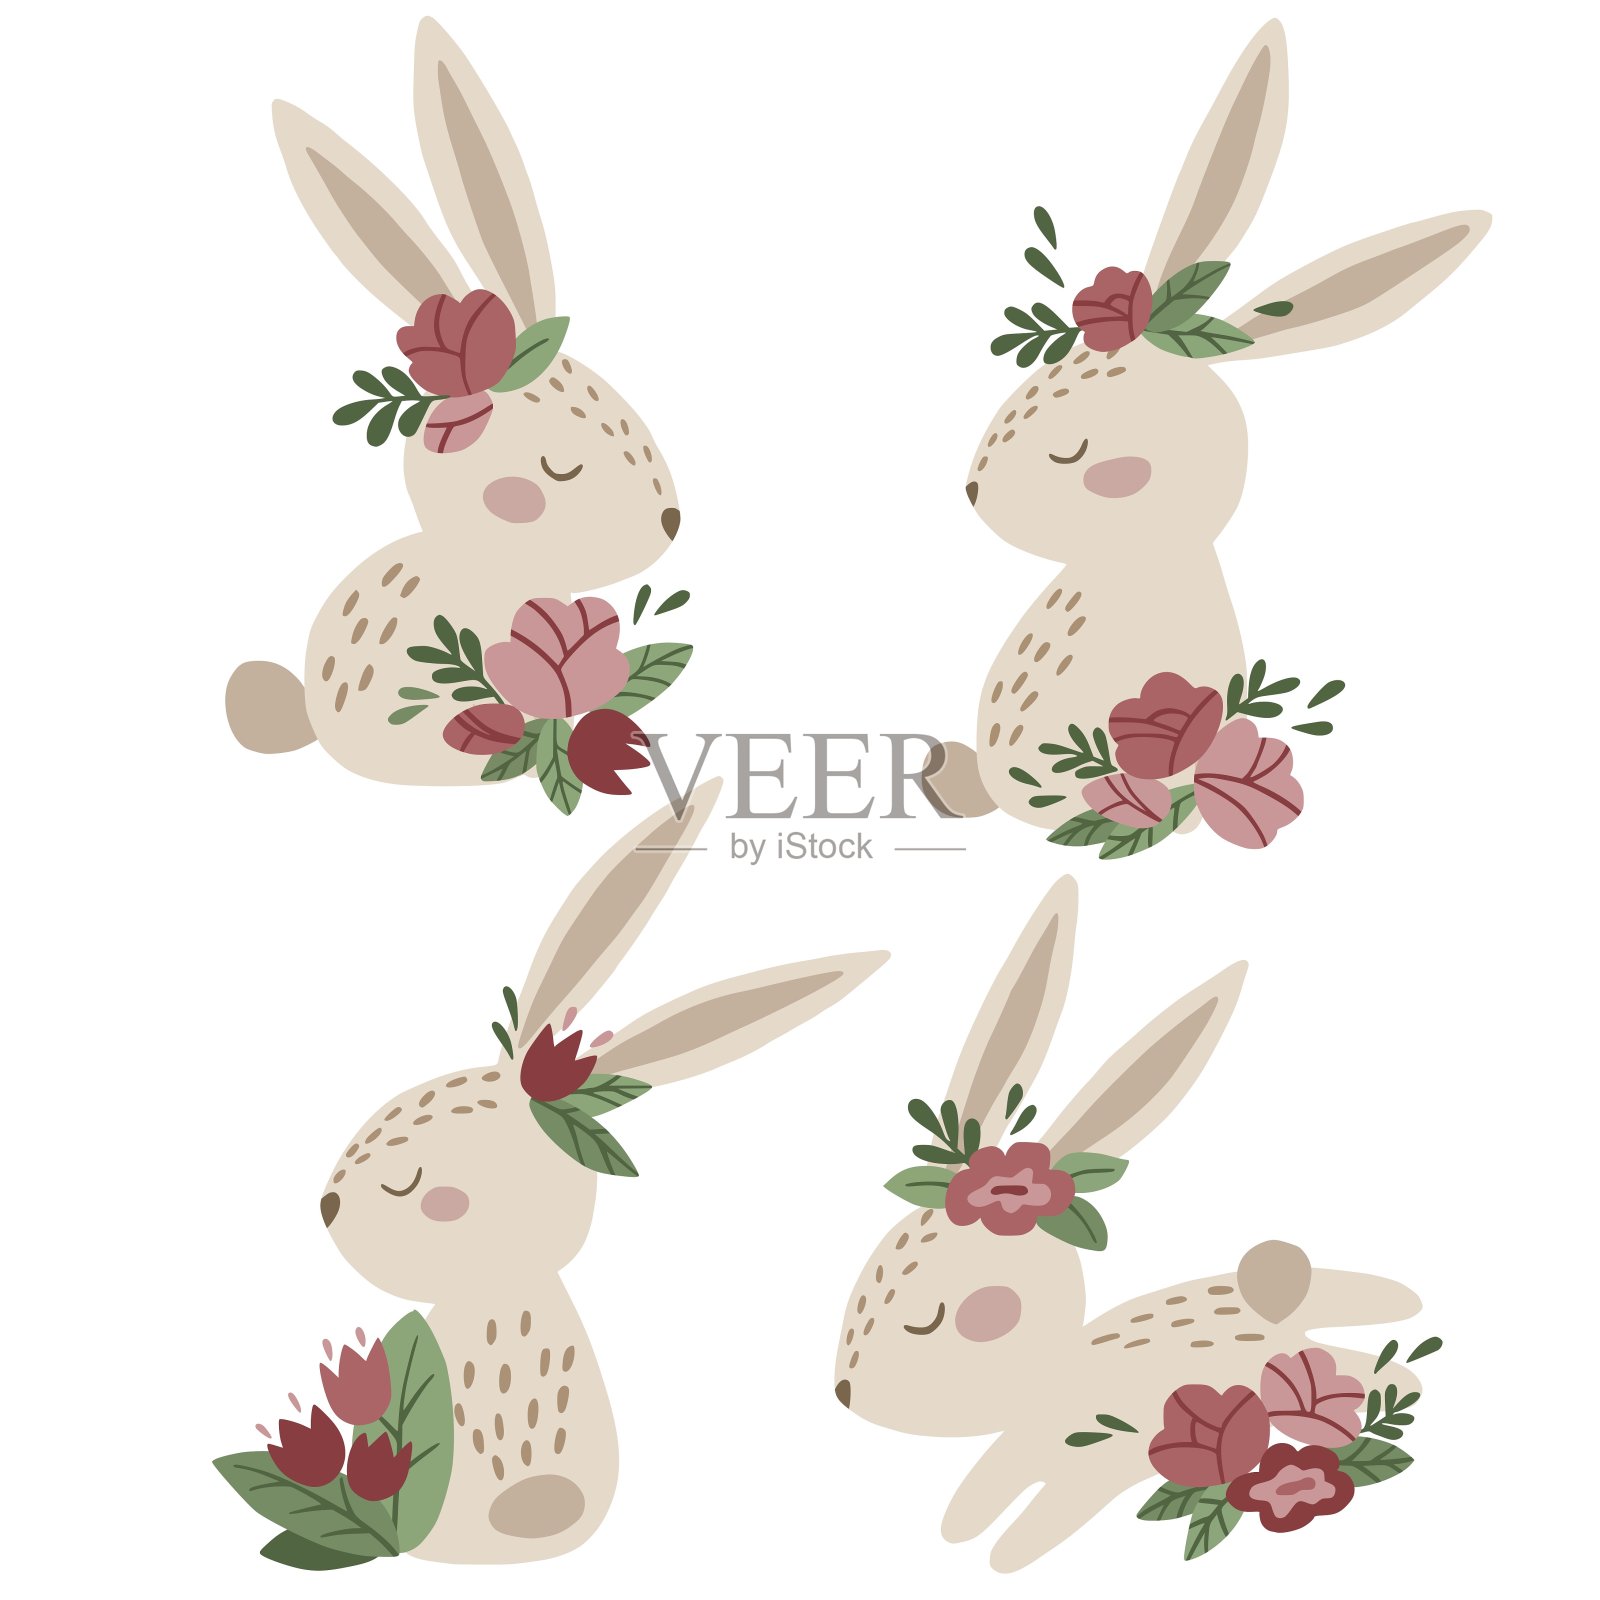 一套可爱的卡通兔子与粉红色的花朵。插画图片素材